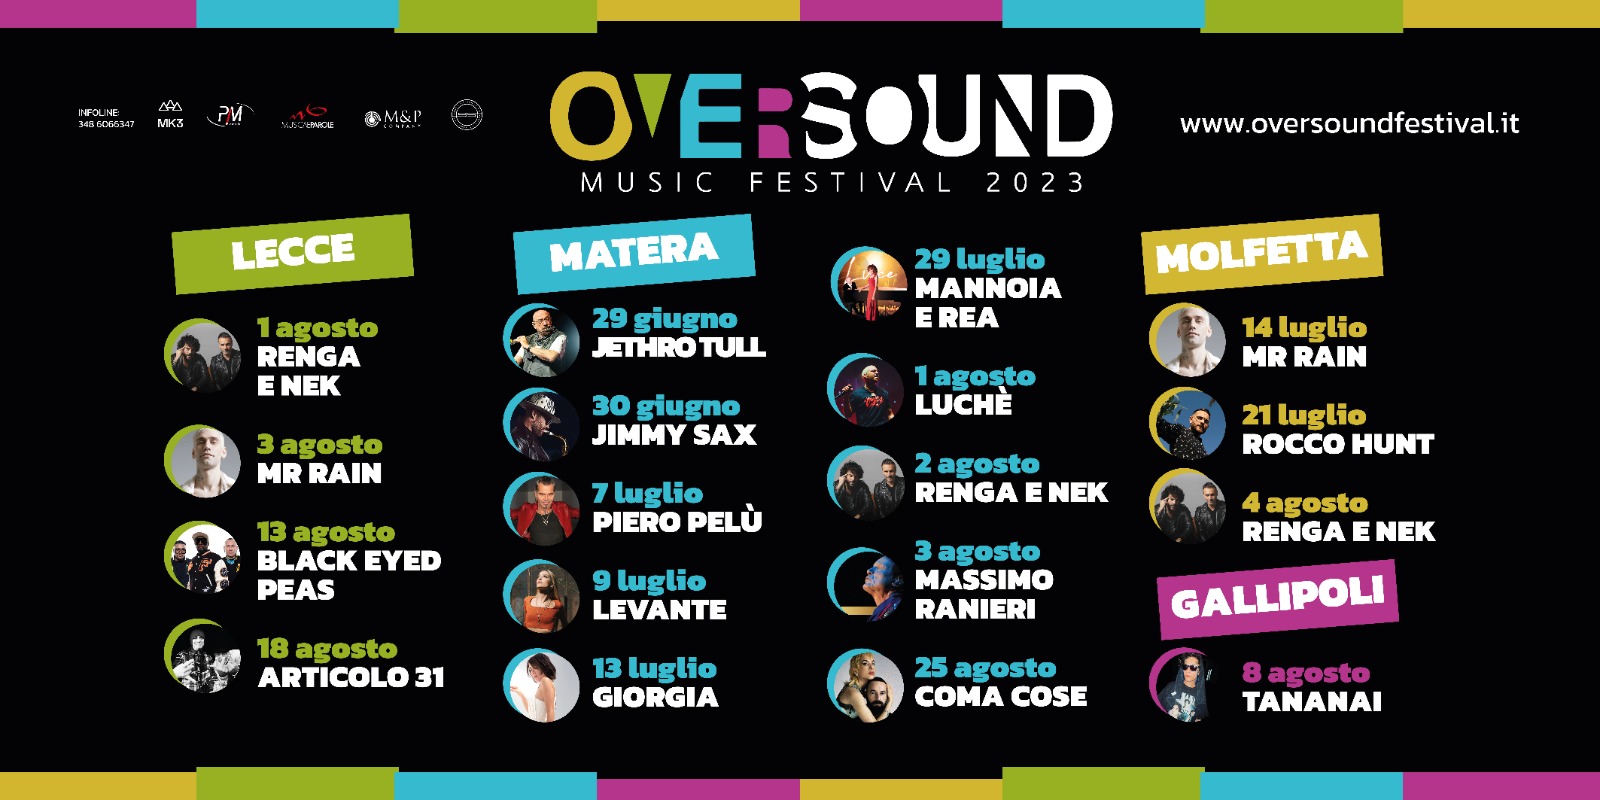 Oversound Music Festival 2023: la line-up completa e tutte le date